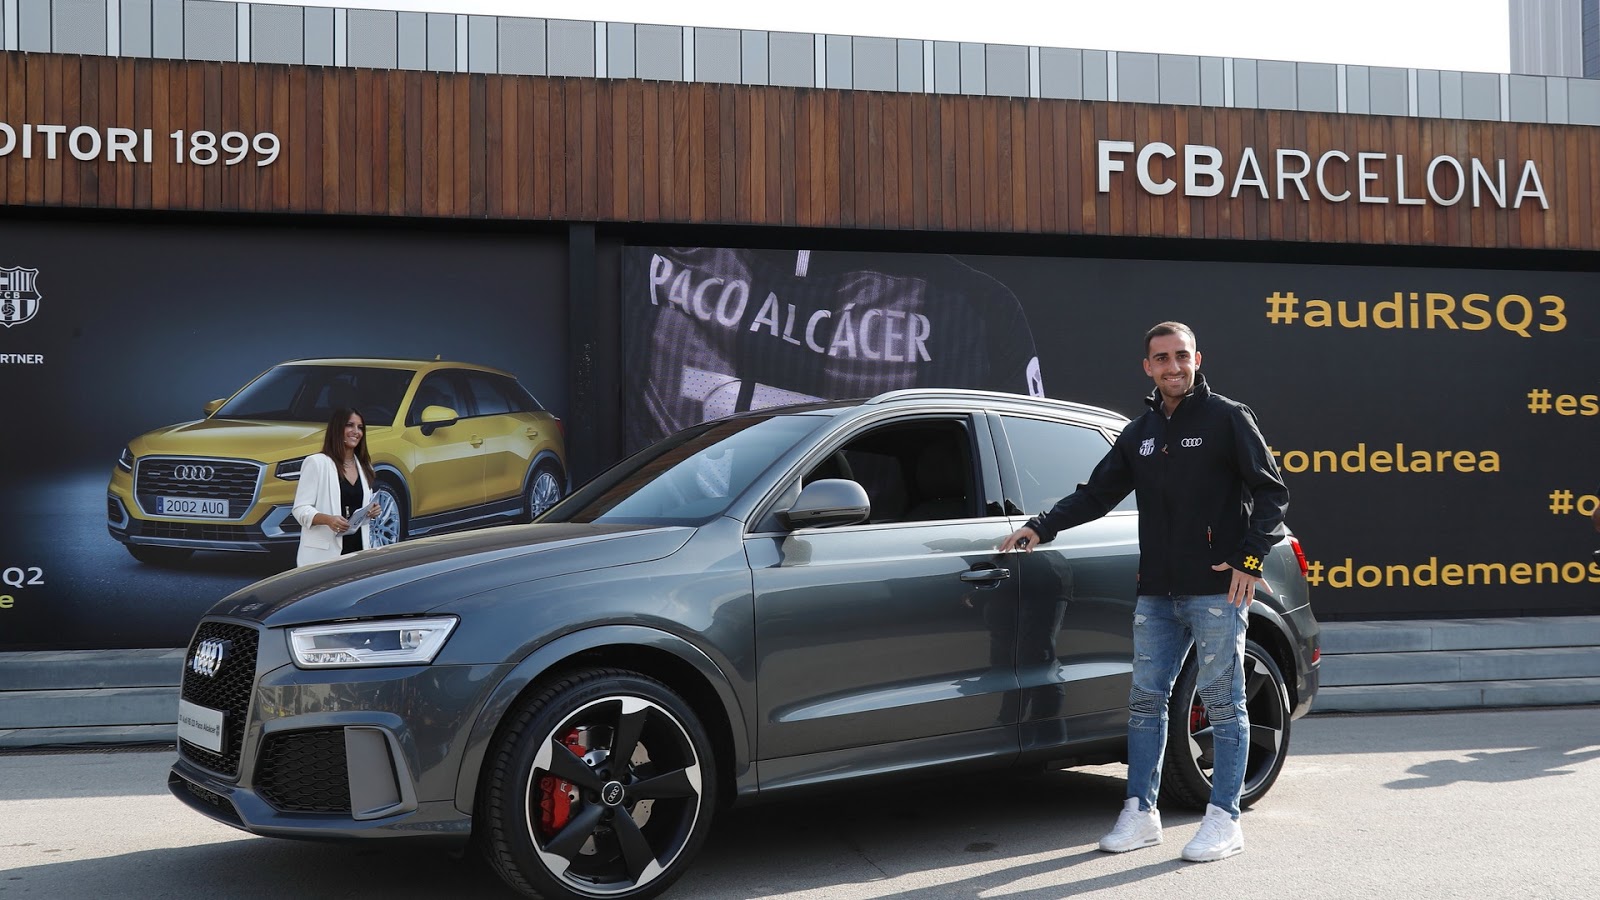 Футболистите на Barcelona получиха новите си коли